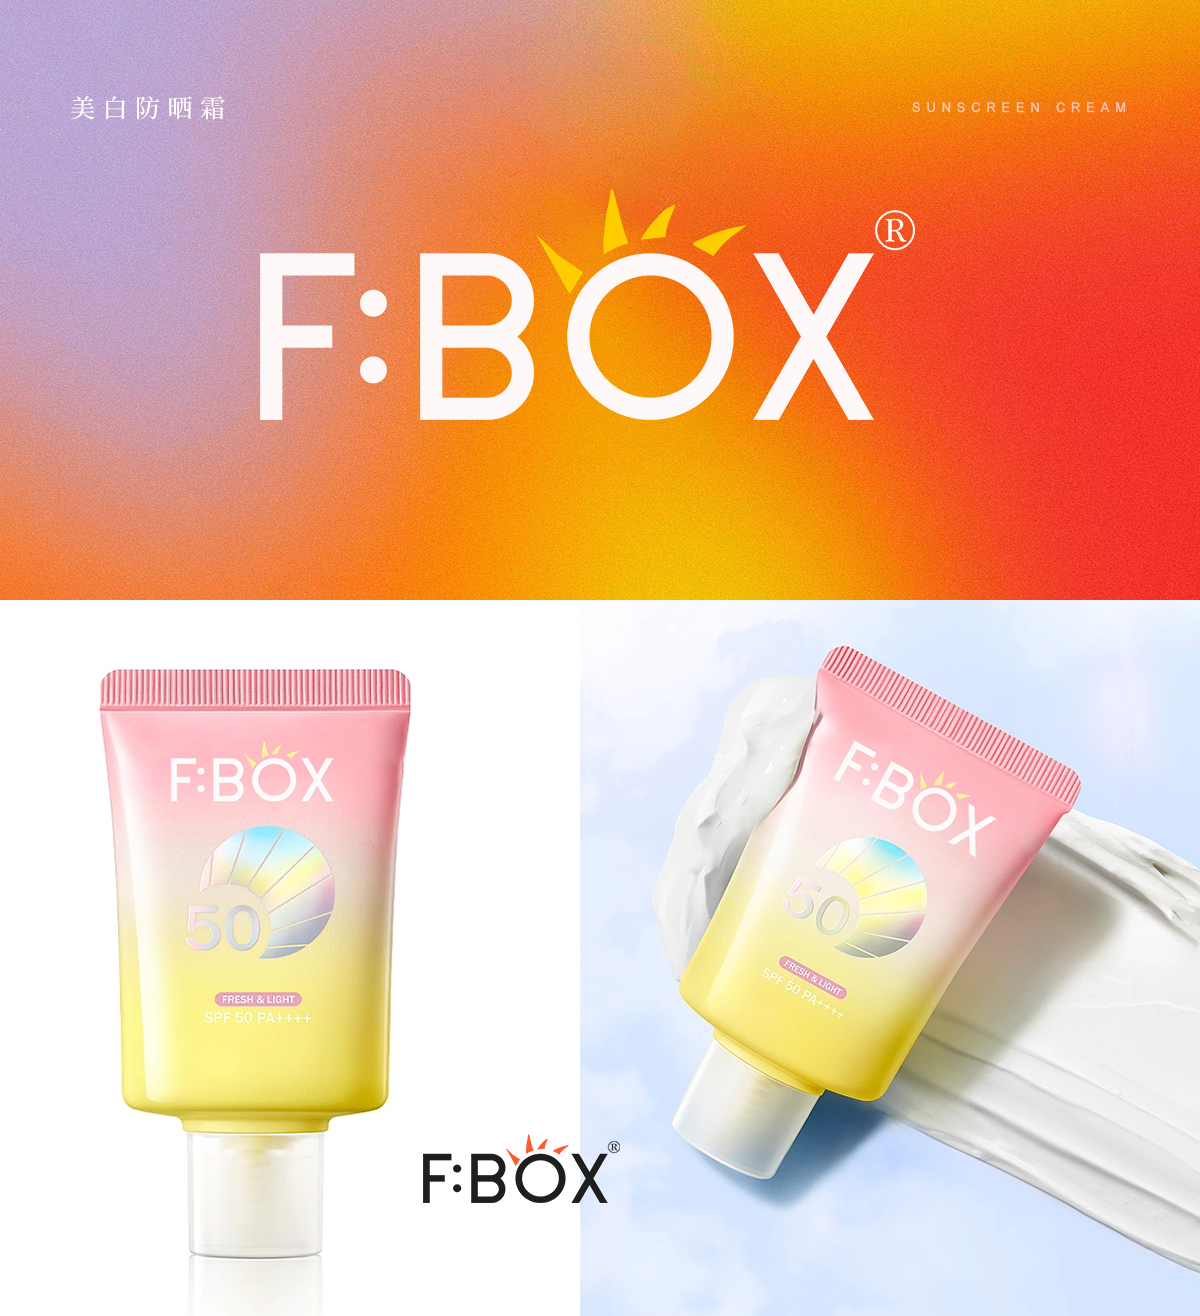 F:BOX